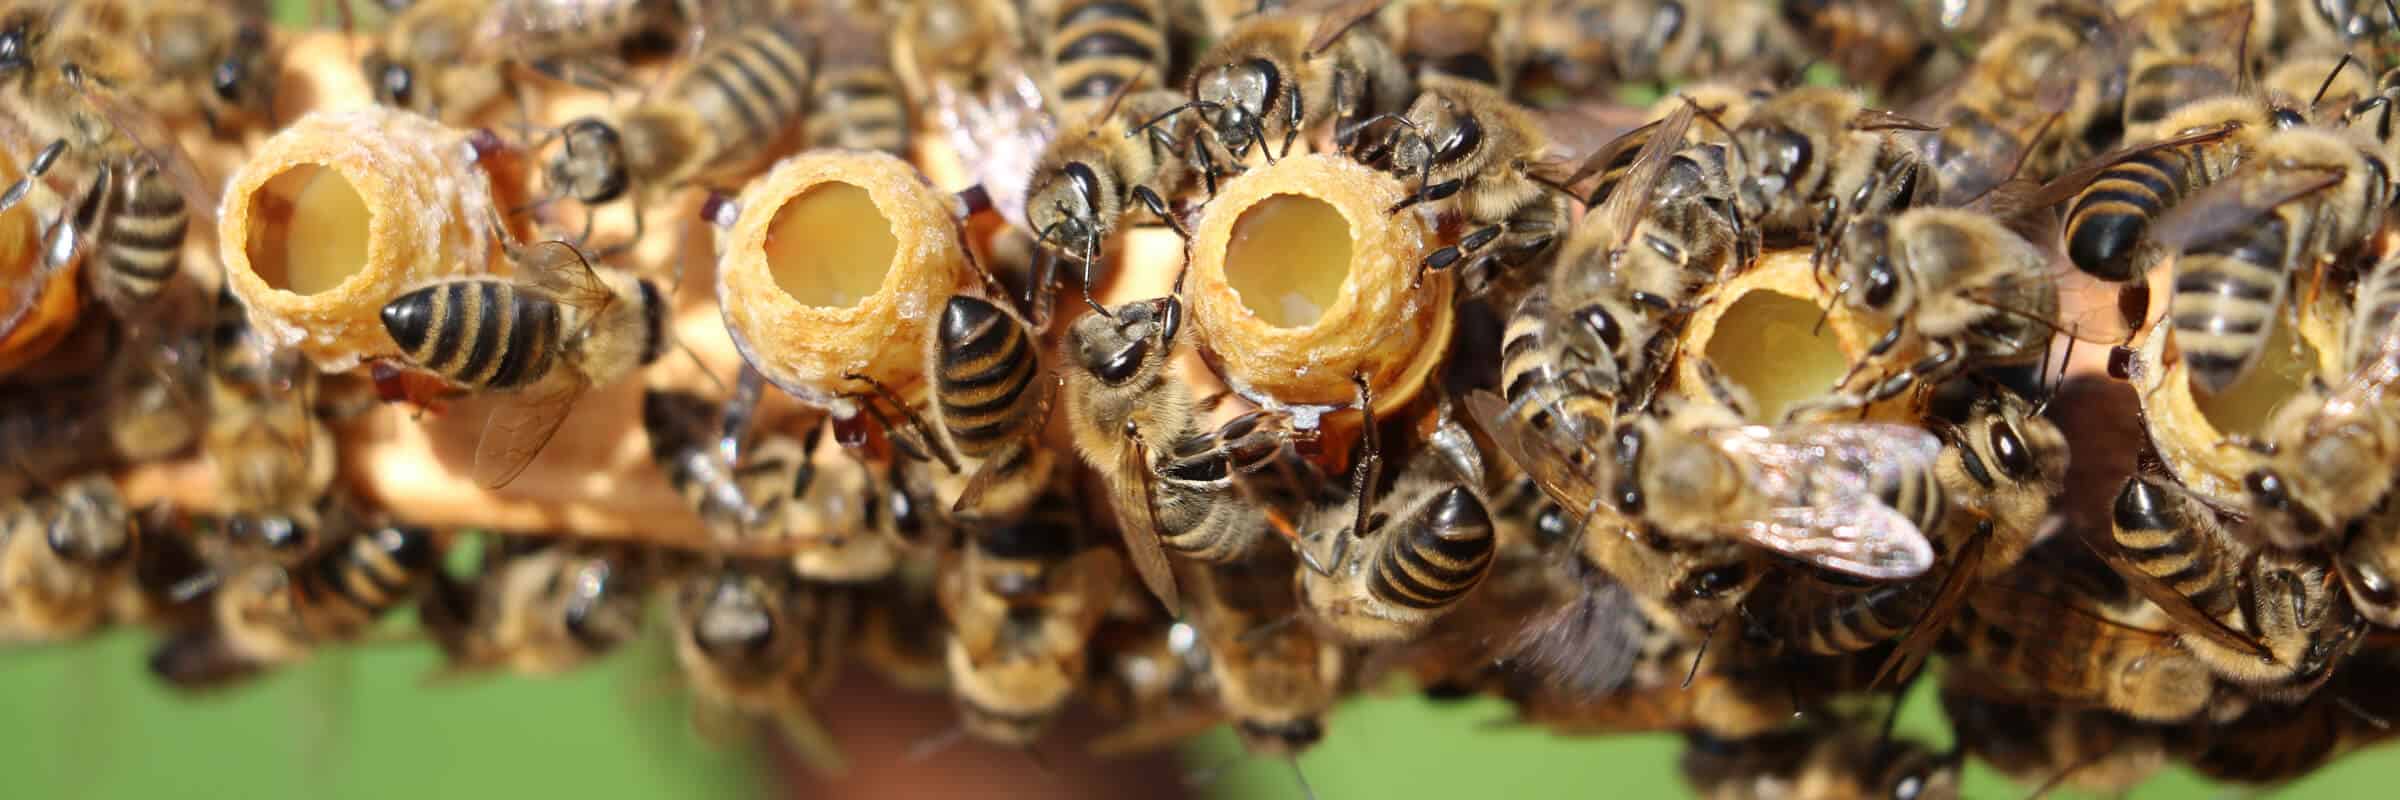 Benefits Of Keeping A Queen Honey Bee